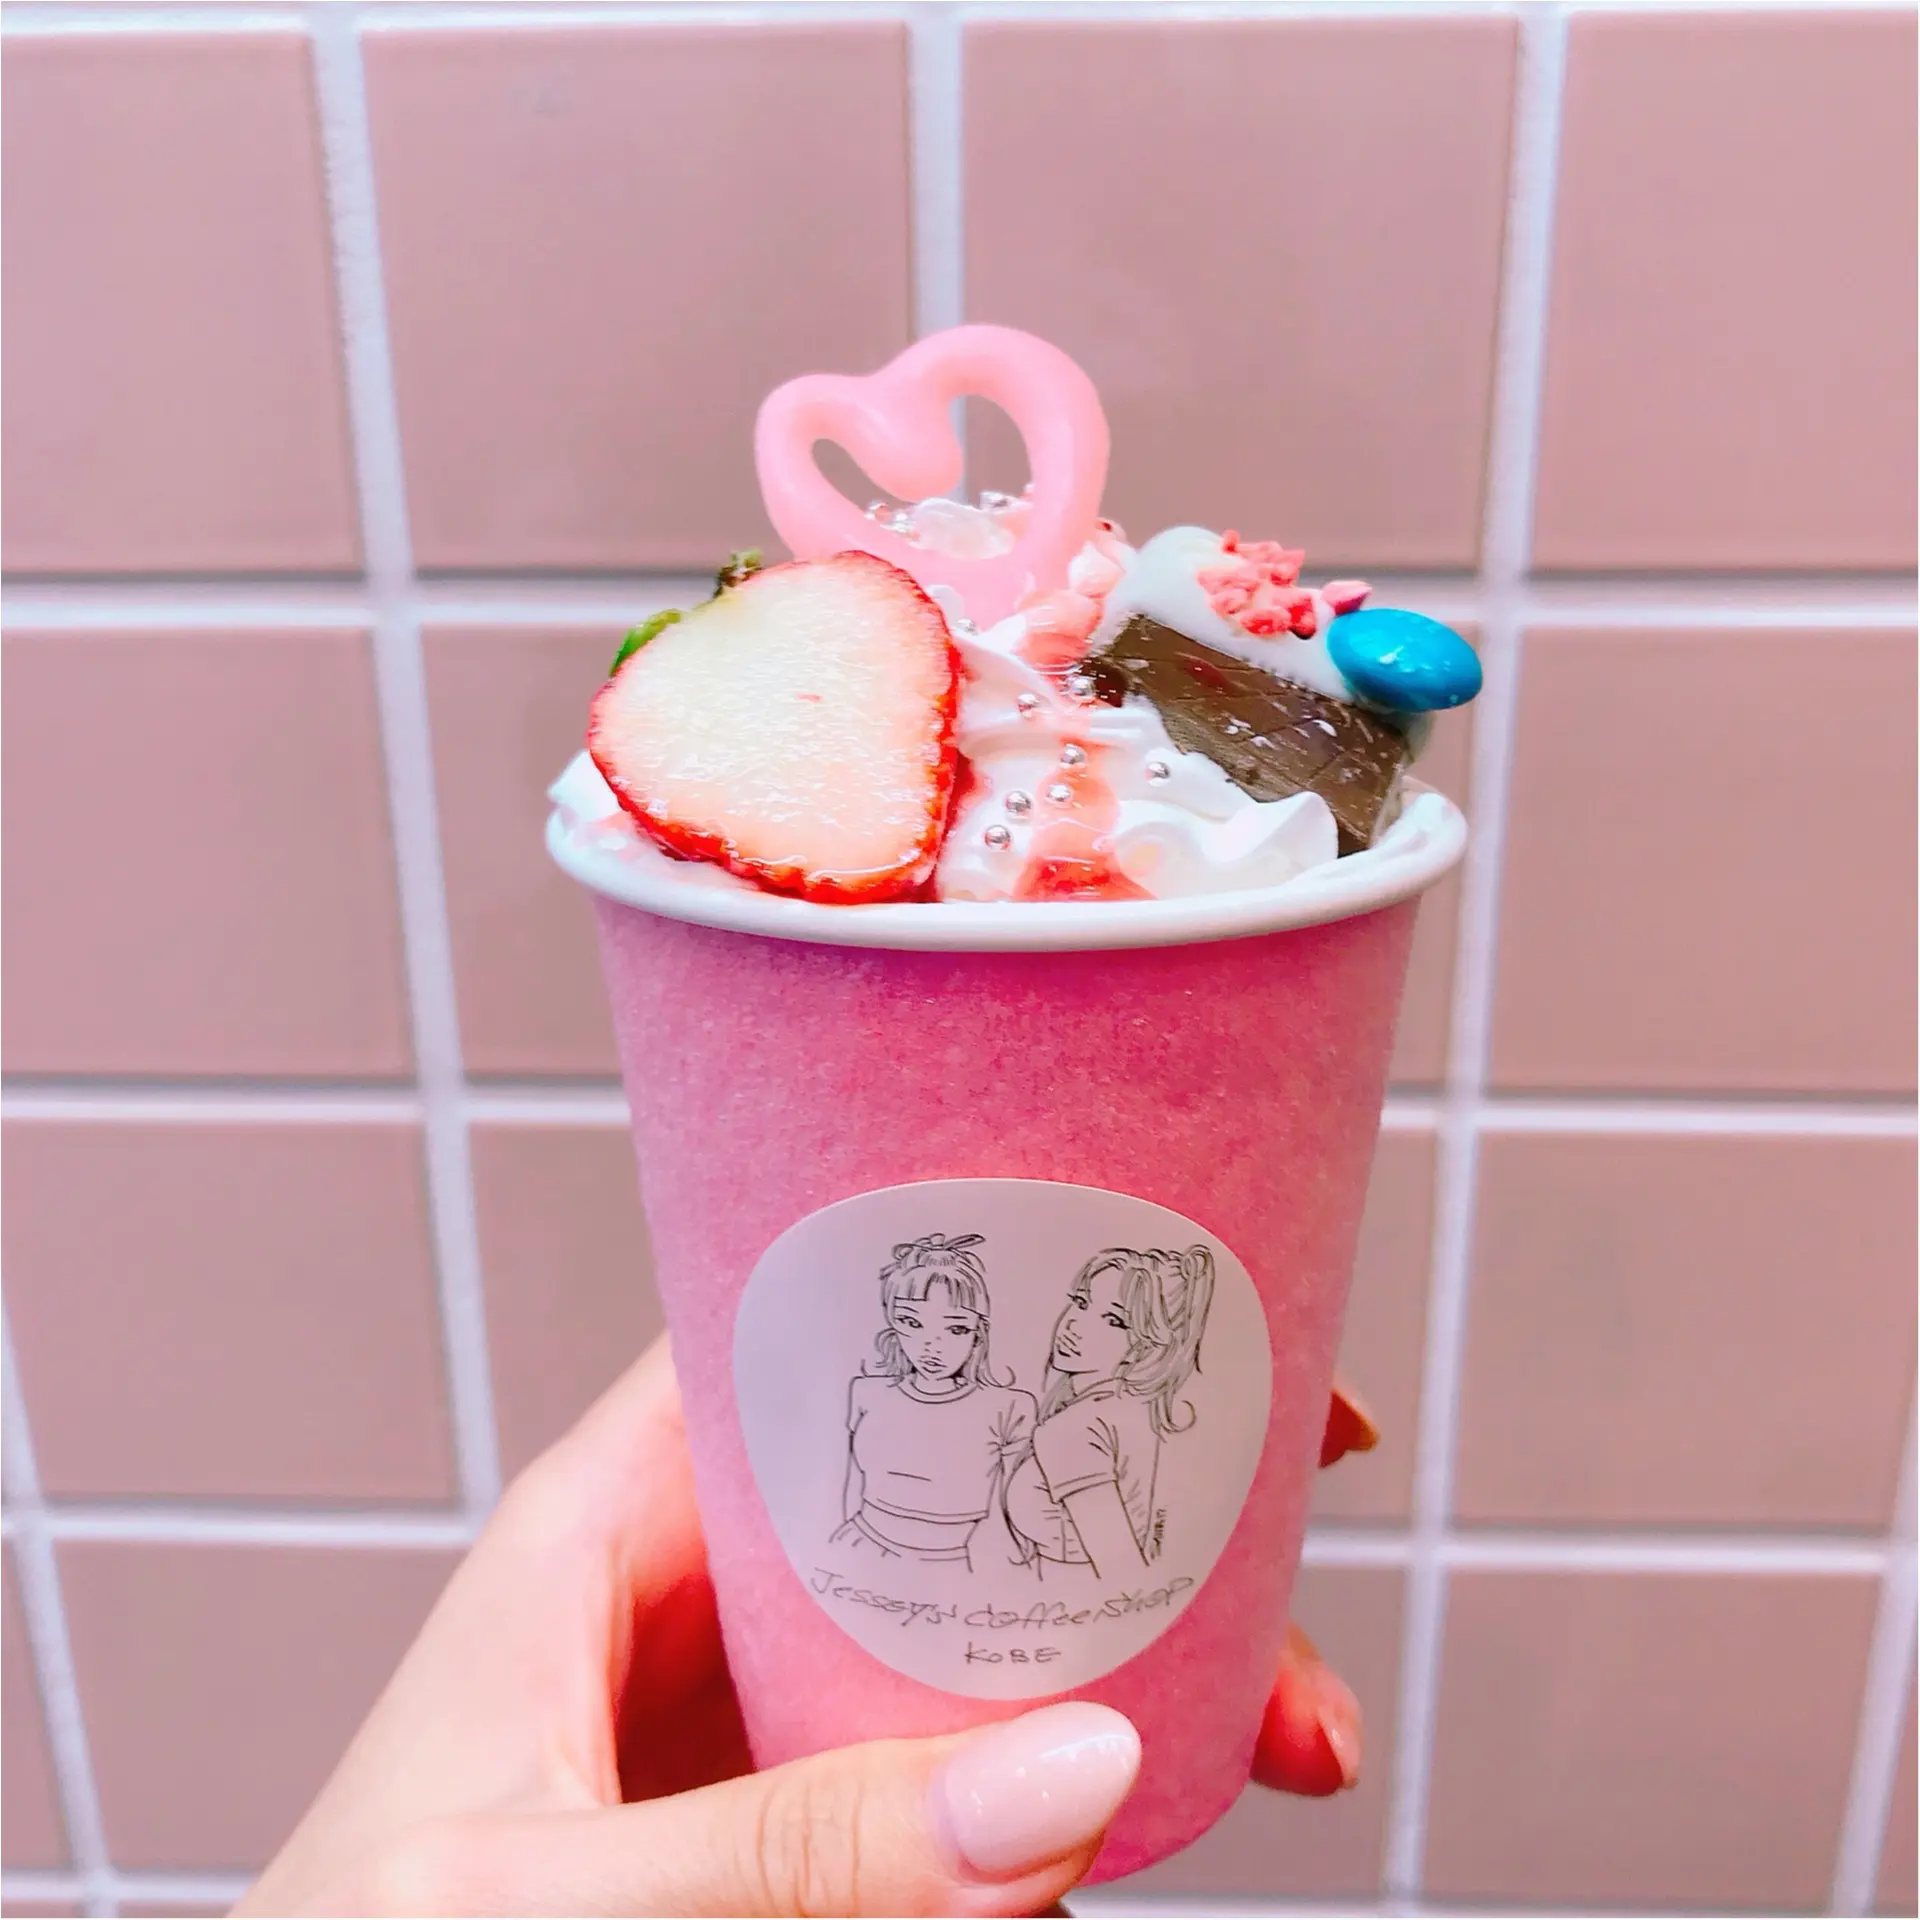 神戸の可愛い カフェならココ ピンクの外装が目印 Jessy S Coffee Shop Moreインフルエンサーズブログ Daily More